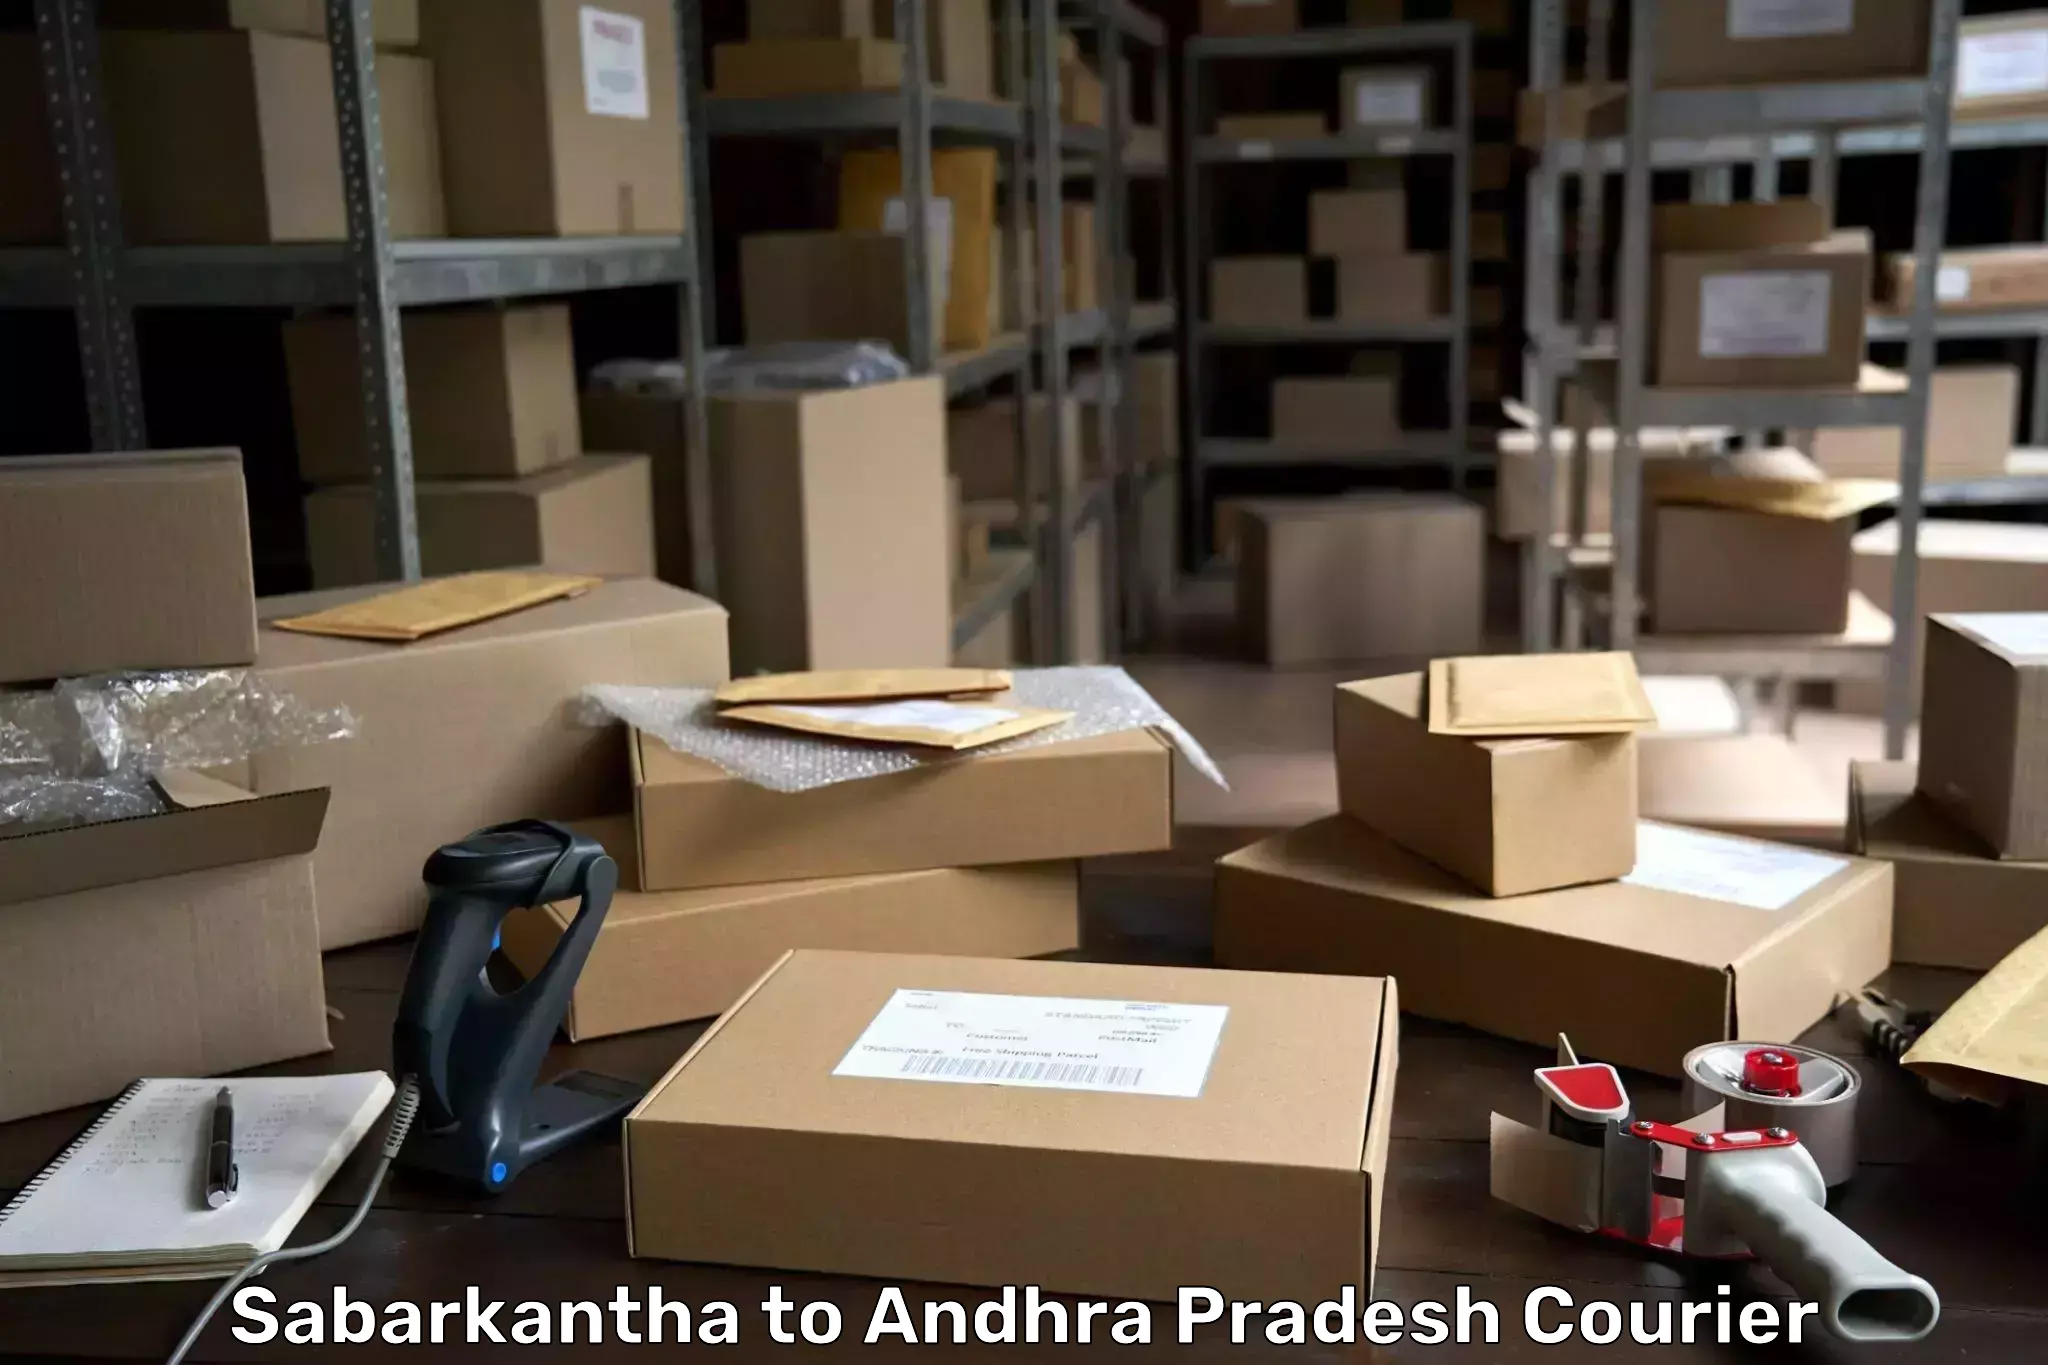 Modern courier technology Sabarkantha to Vijayawada